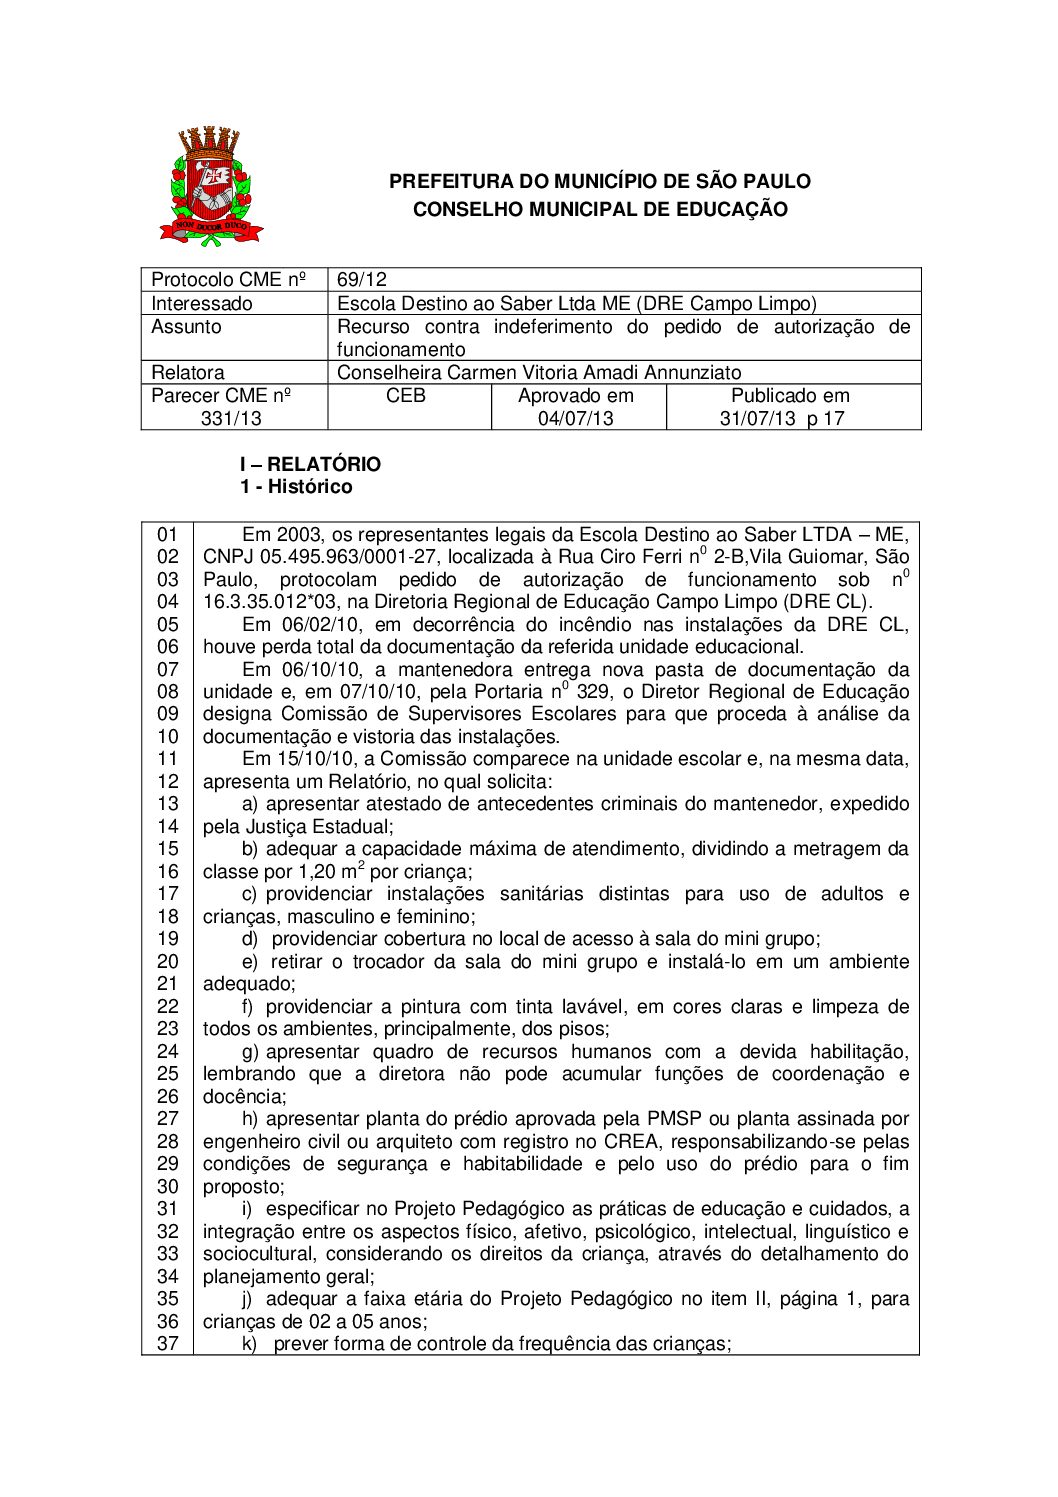 Parecer CME nº 331/2013 - Escola Destino ao Saber Ltda ME (DRE Campo Limpo) - Recurso contra indeferimento do pedido de autorização de funcionamento 